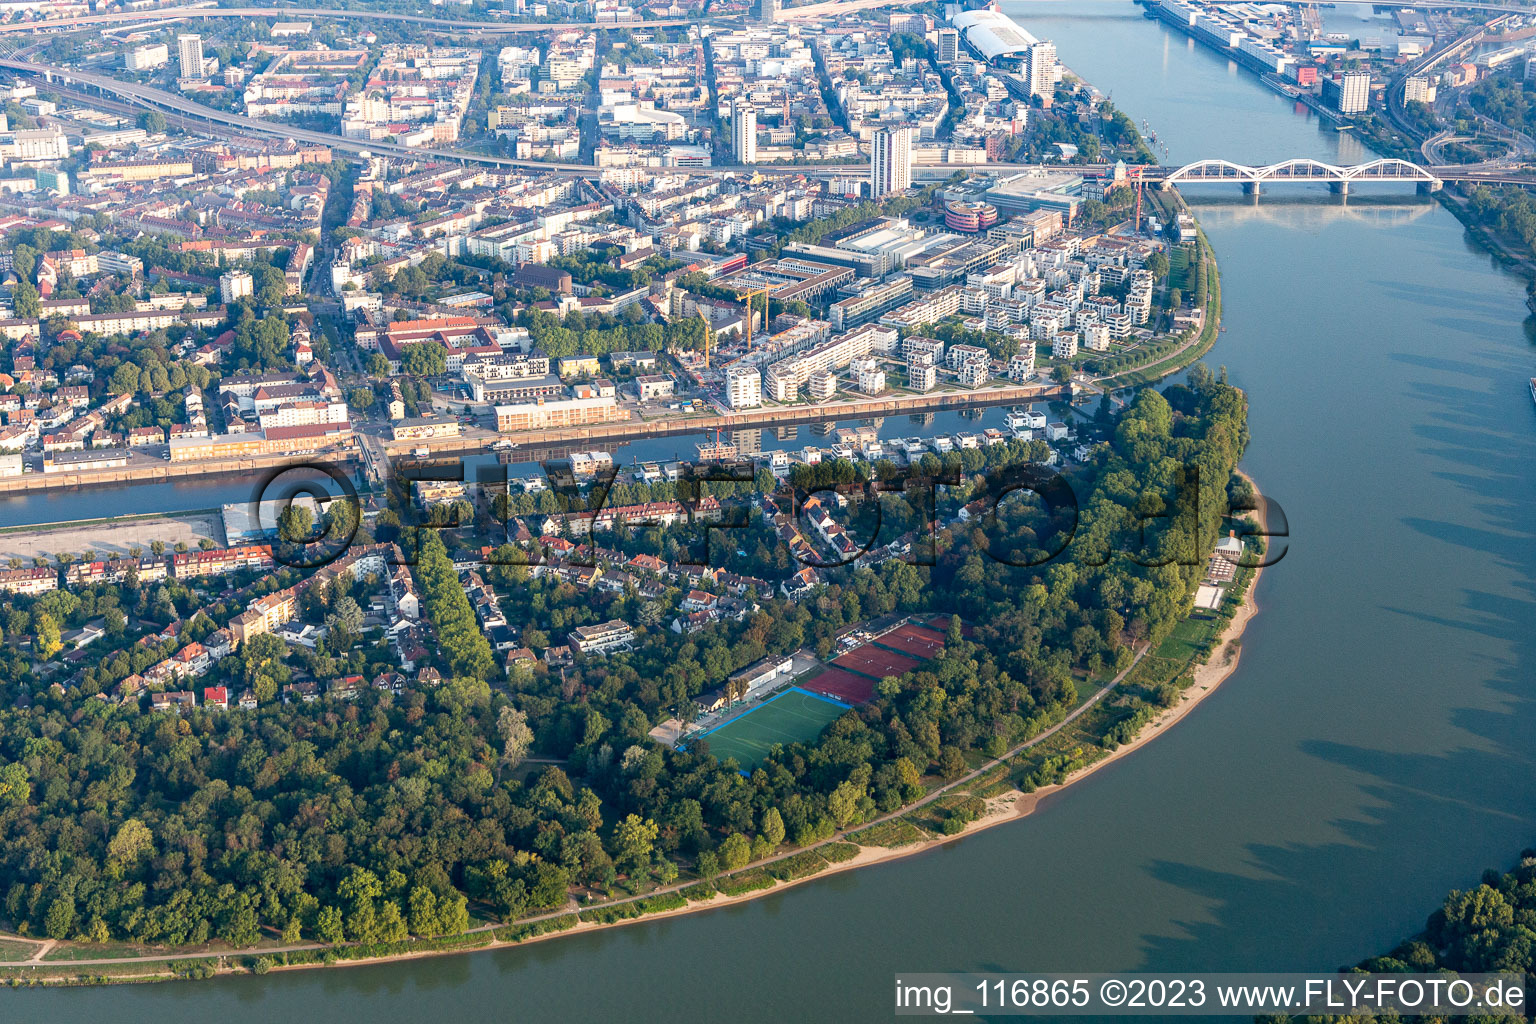 Luftbild von Parkinsel Stadtpark am Rhein im Ortsteil Süd in Ludwigshafen am Rhein im Bundesland Rheinland-Pfalz, Deutschland